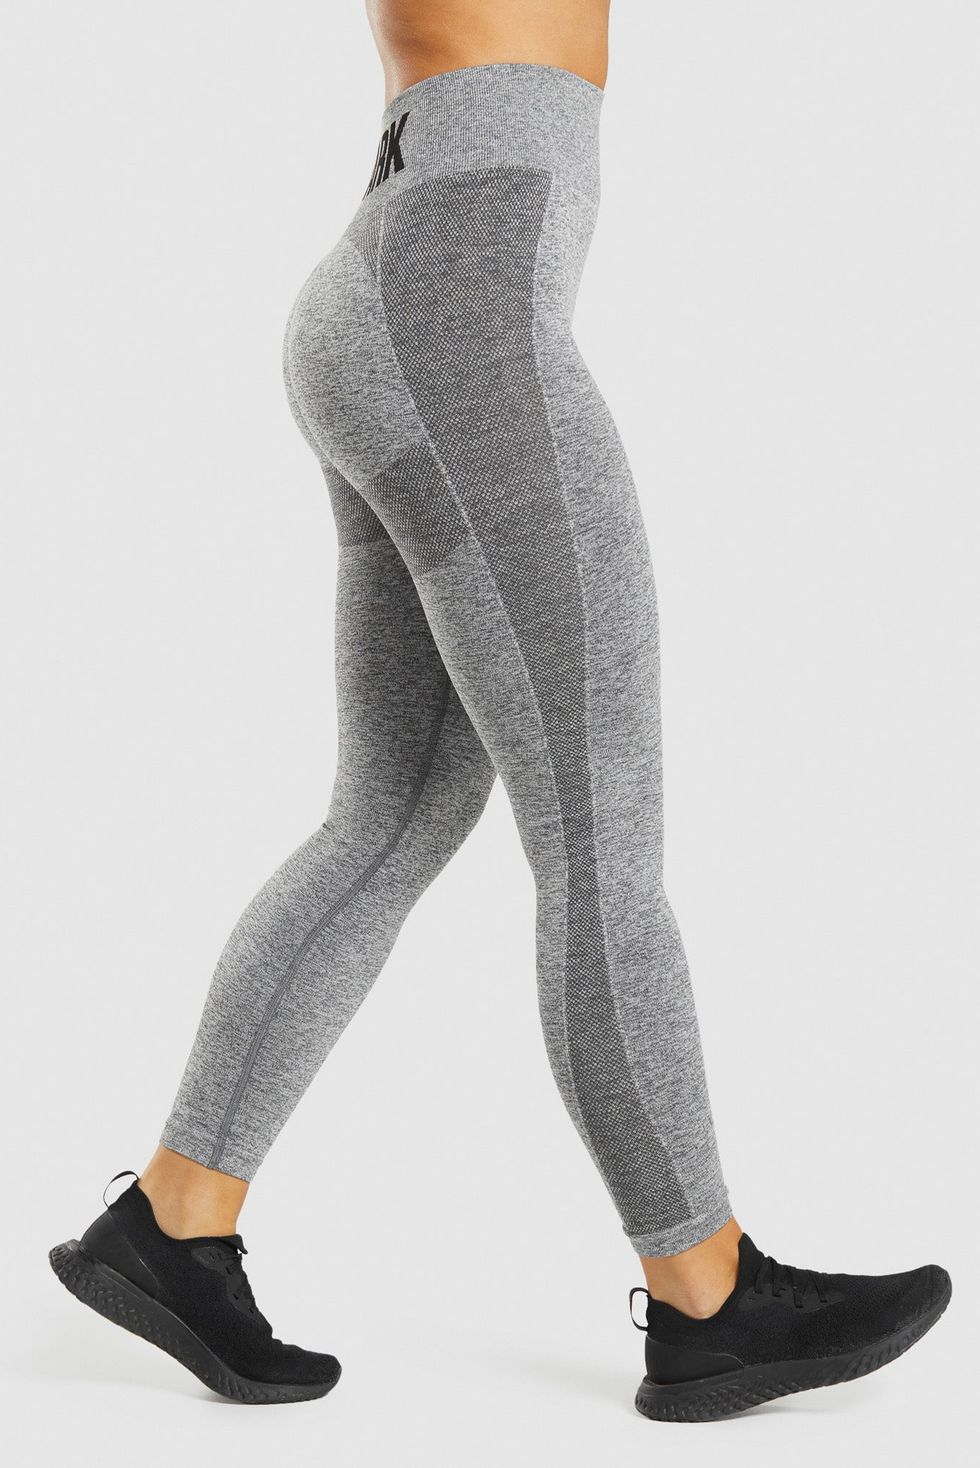 Gymshark Flex Leggings Review - Overhyped Or Amazing?  Gymshark flex  leggings, Flex leggings, High waisted leggings